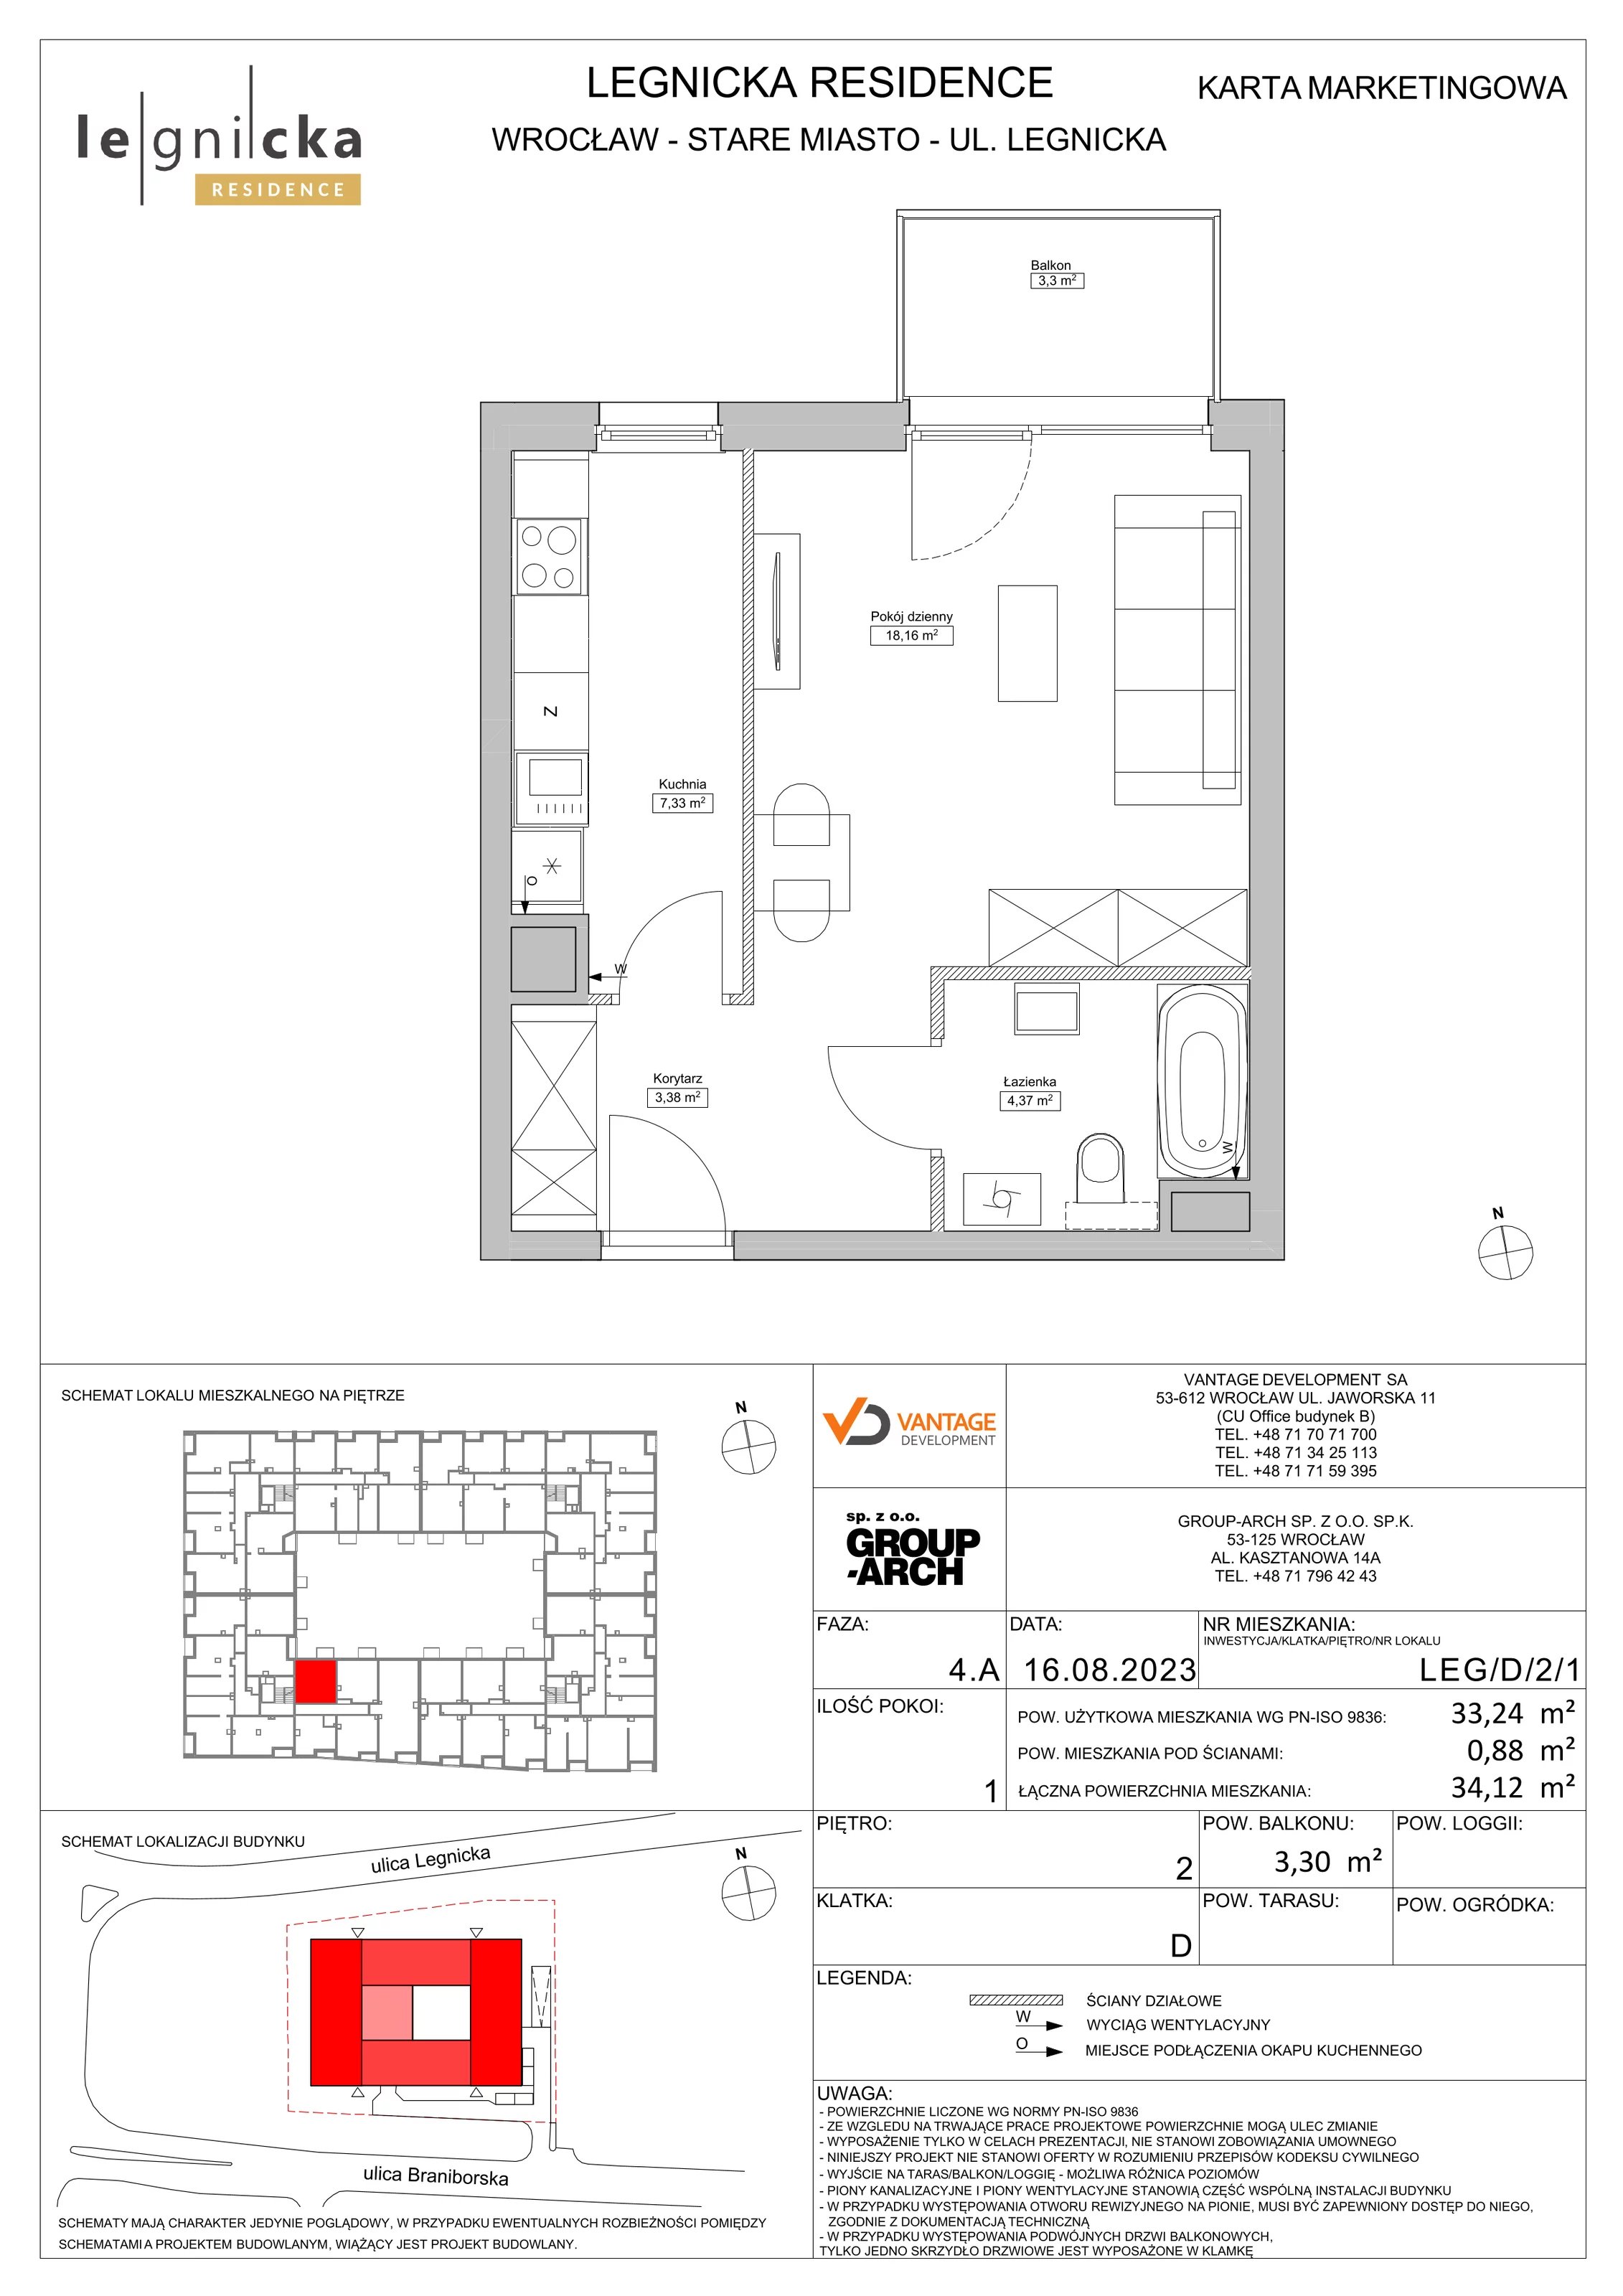 Apartament inwestycyjny 33,24 m², piętro 2, oferta nr LEG/D/2/1, Legnicka Residence, Wrocław, Szczepin, ul. Legnicka 36